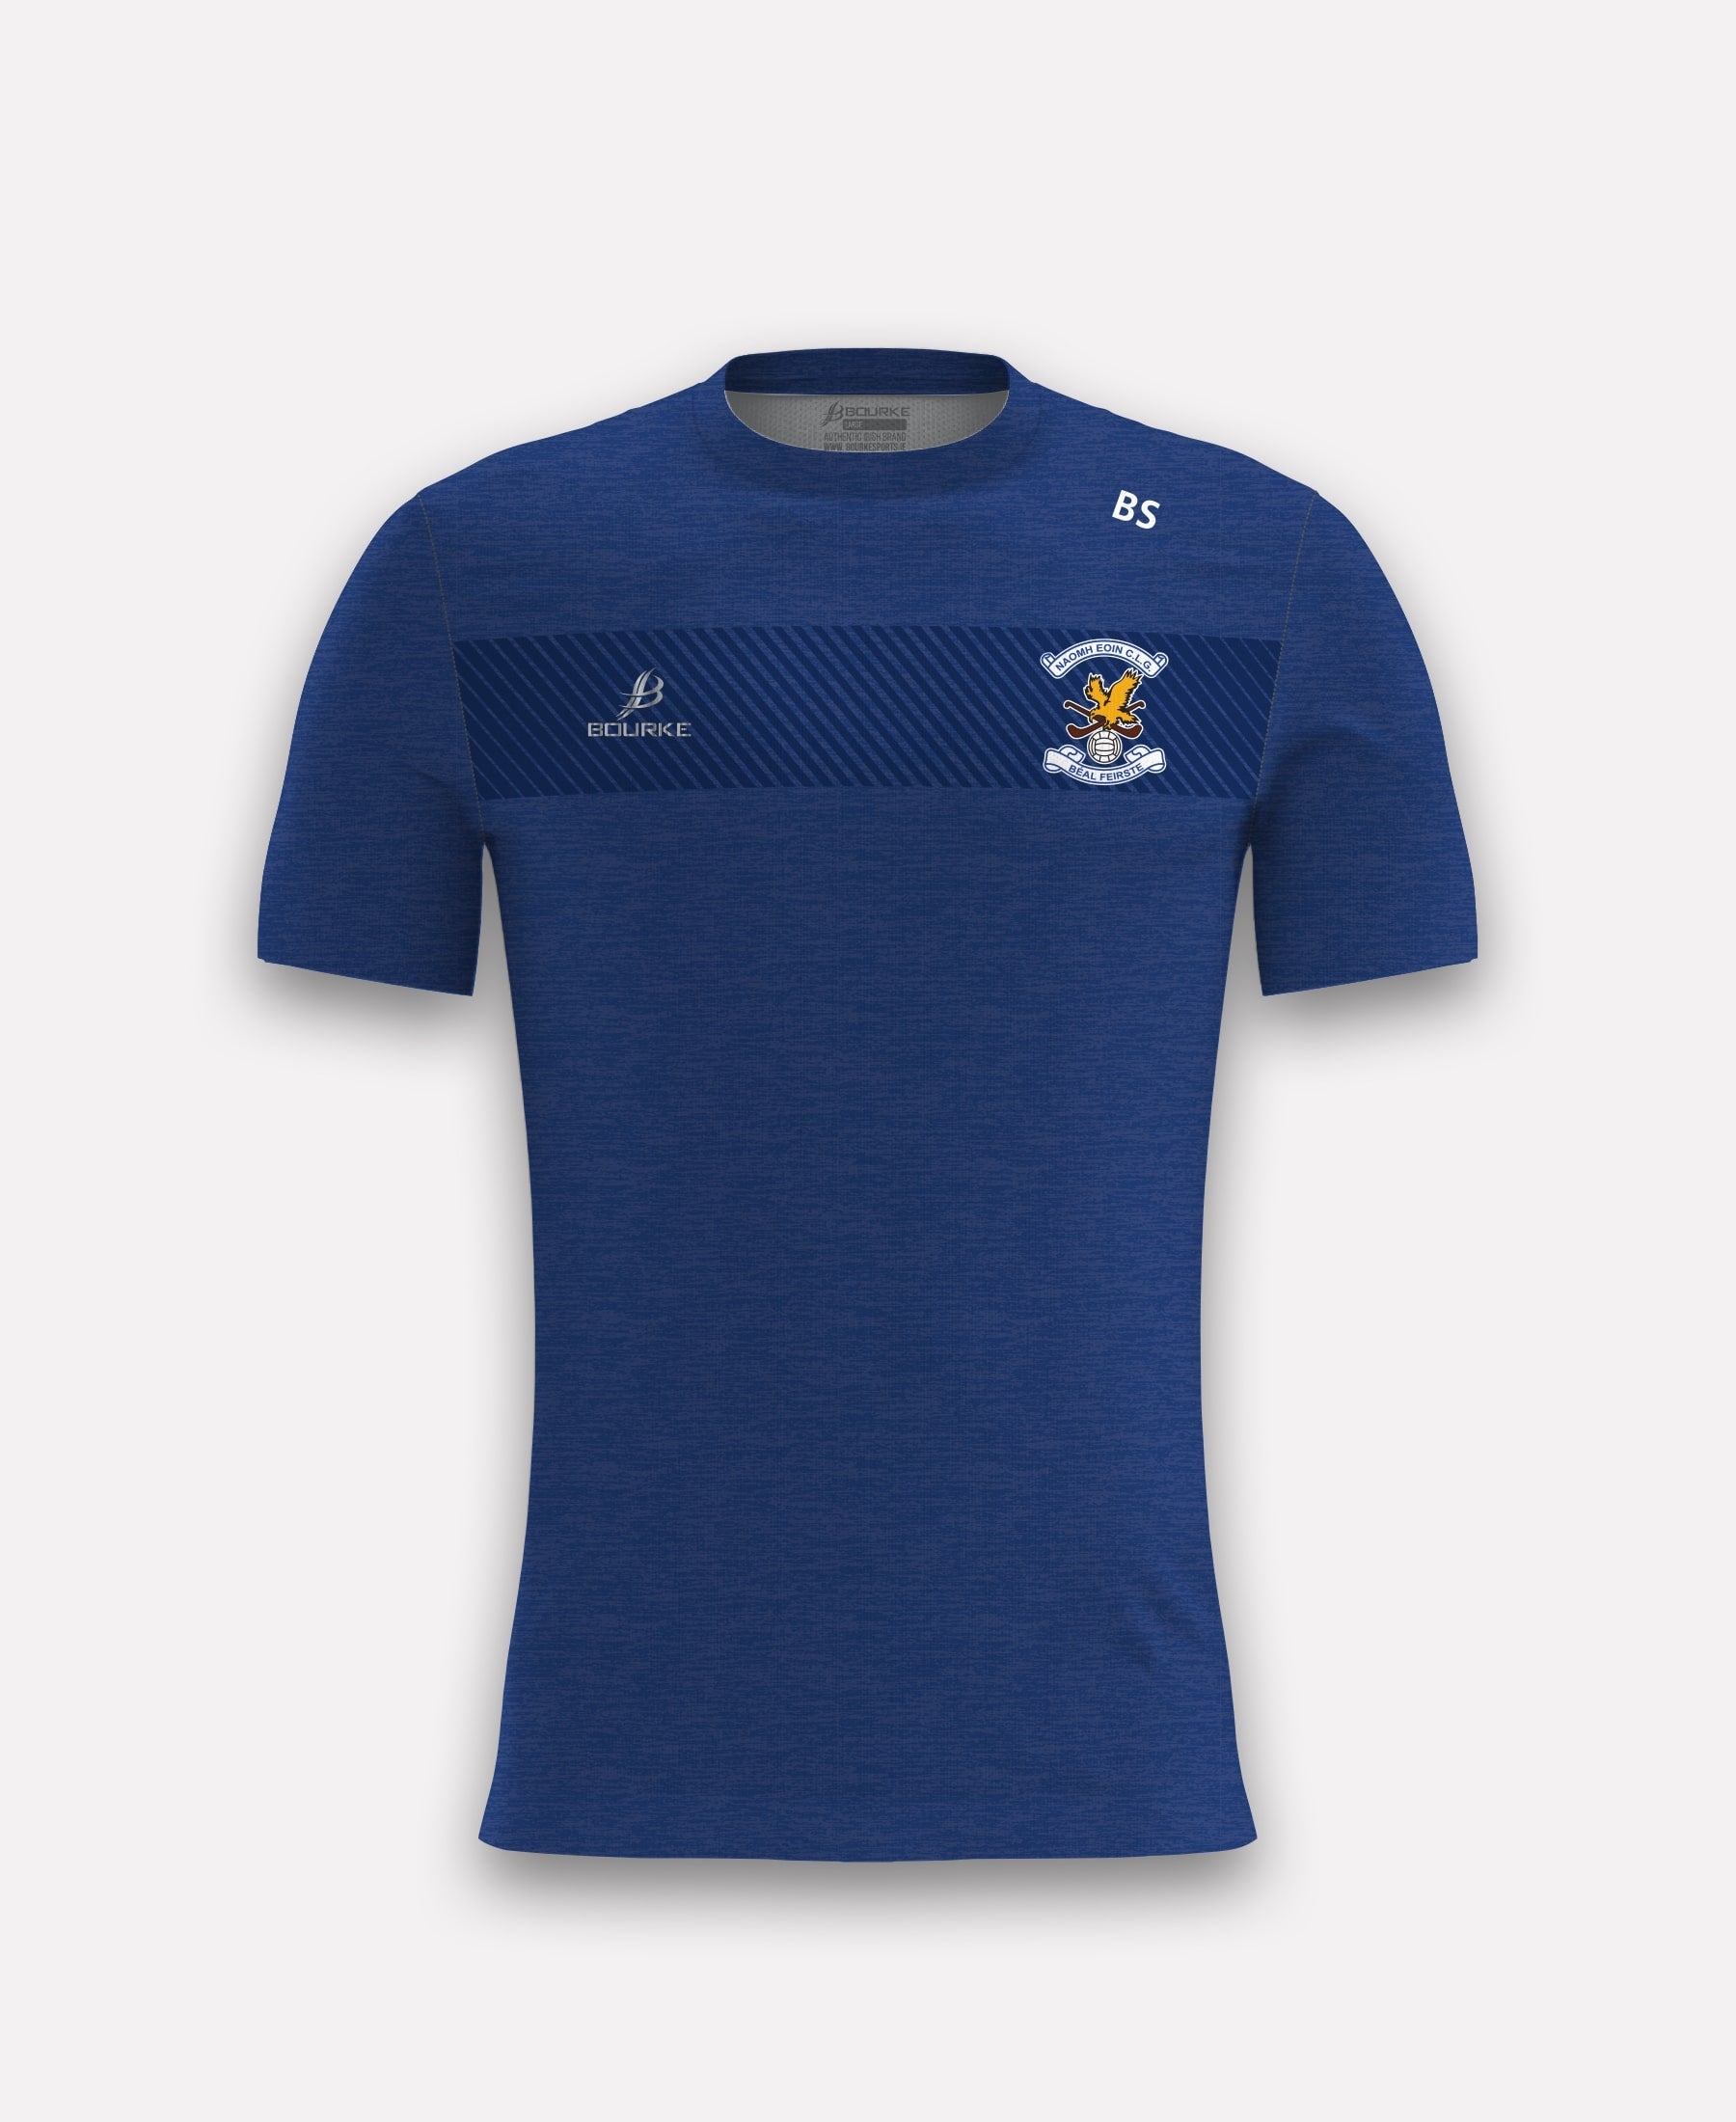 Naomh Eoin Belfast TACA T-Shirt (Royal)